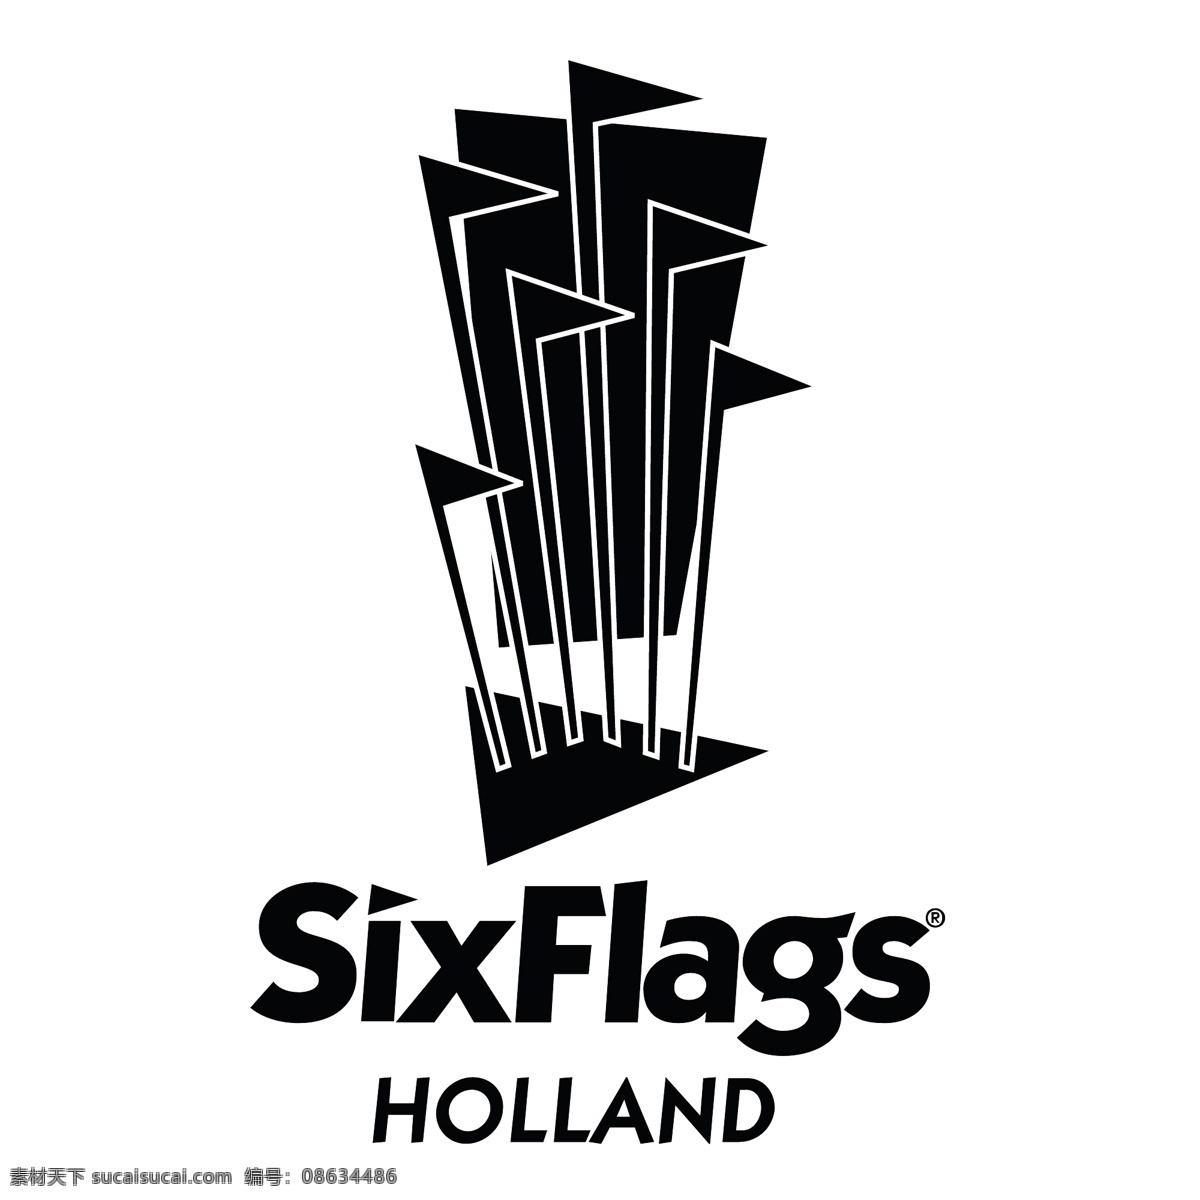 乔治亚州 荷兰 免费 标志 标识 psd源文件 logo设计